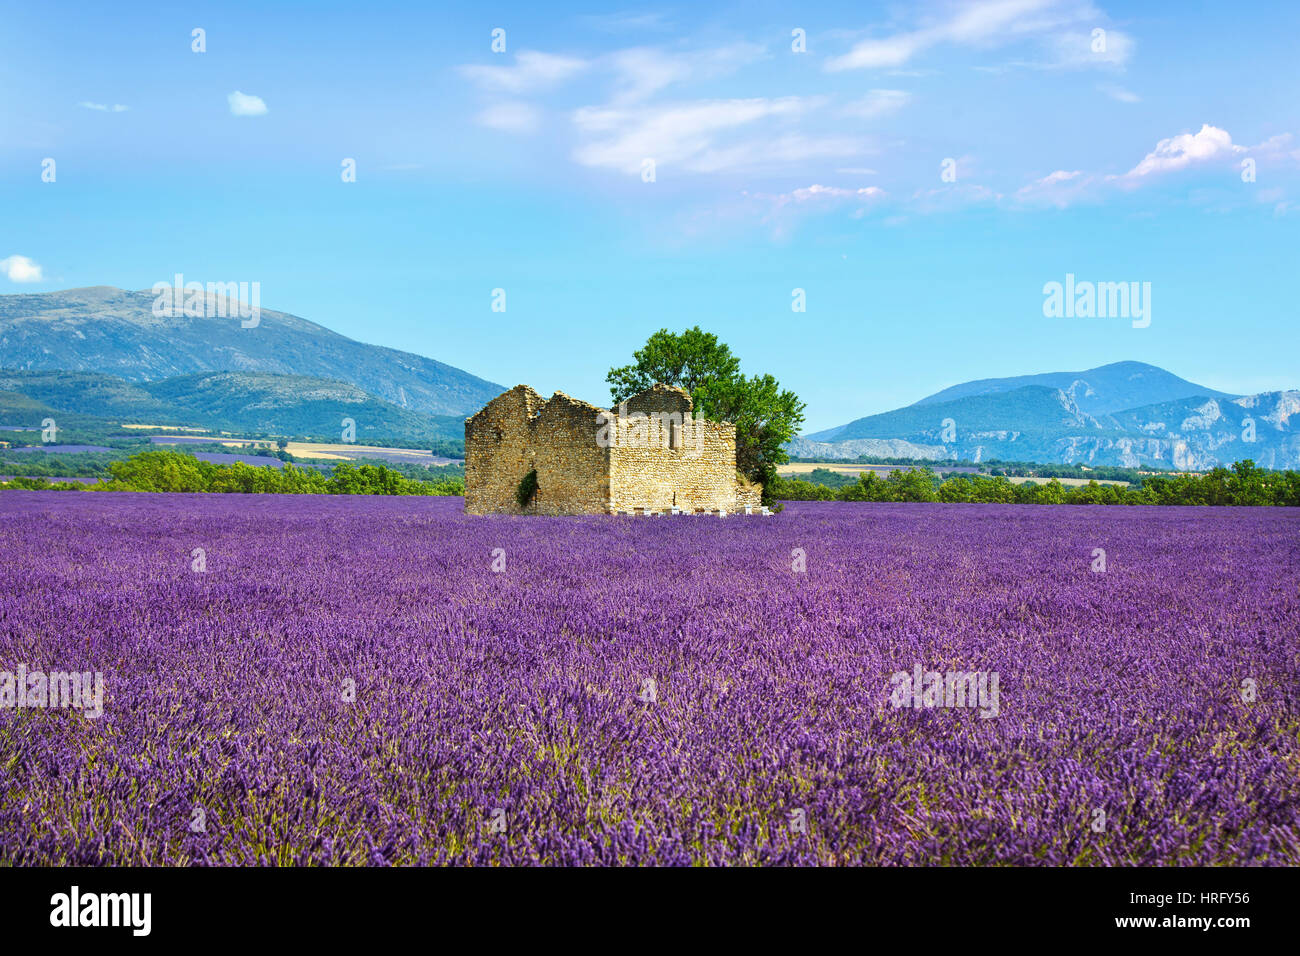 Lavendel Blumen blühen, Feld, Weizen, altes Haus und einsame Baum. Panorama-Blick. Plateau de Valensole, Provence, Frankreich, Europa. Stockfoto